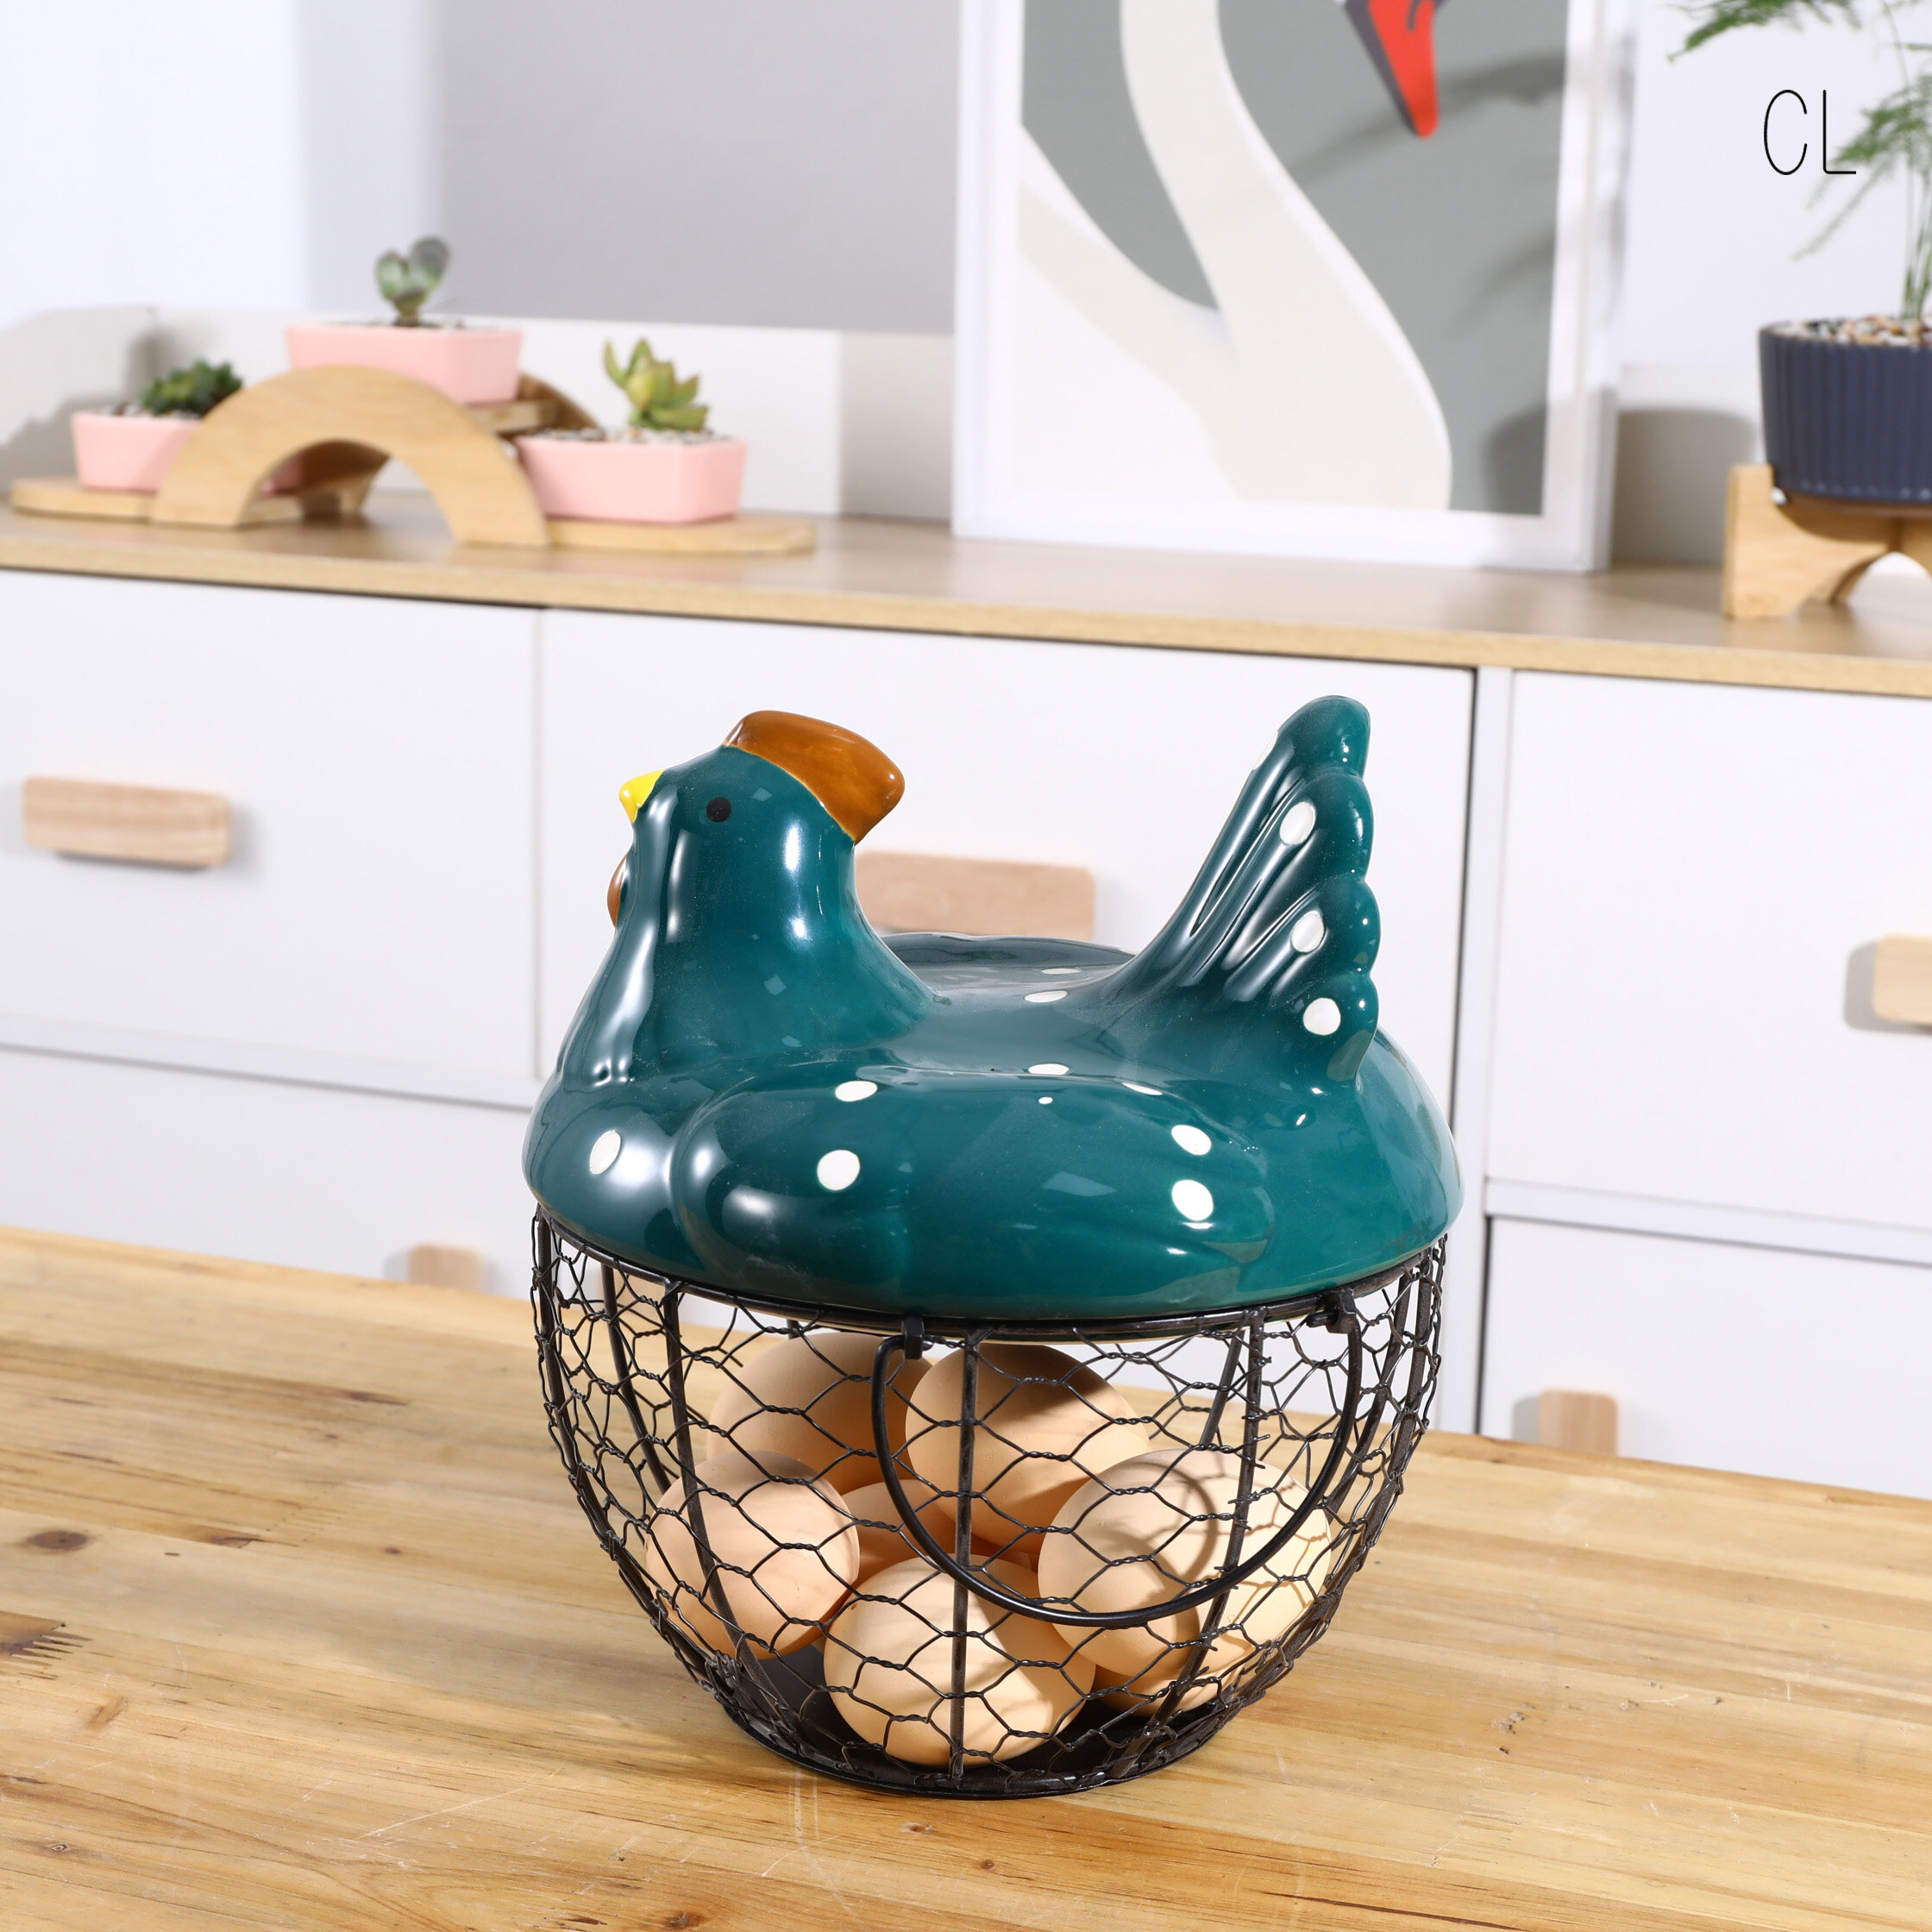 chicken egg storage basket, China ceramic kitchenware wholesale